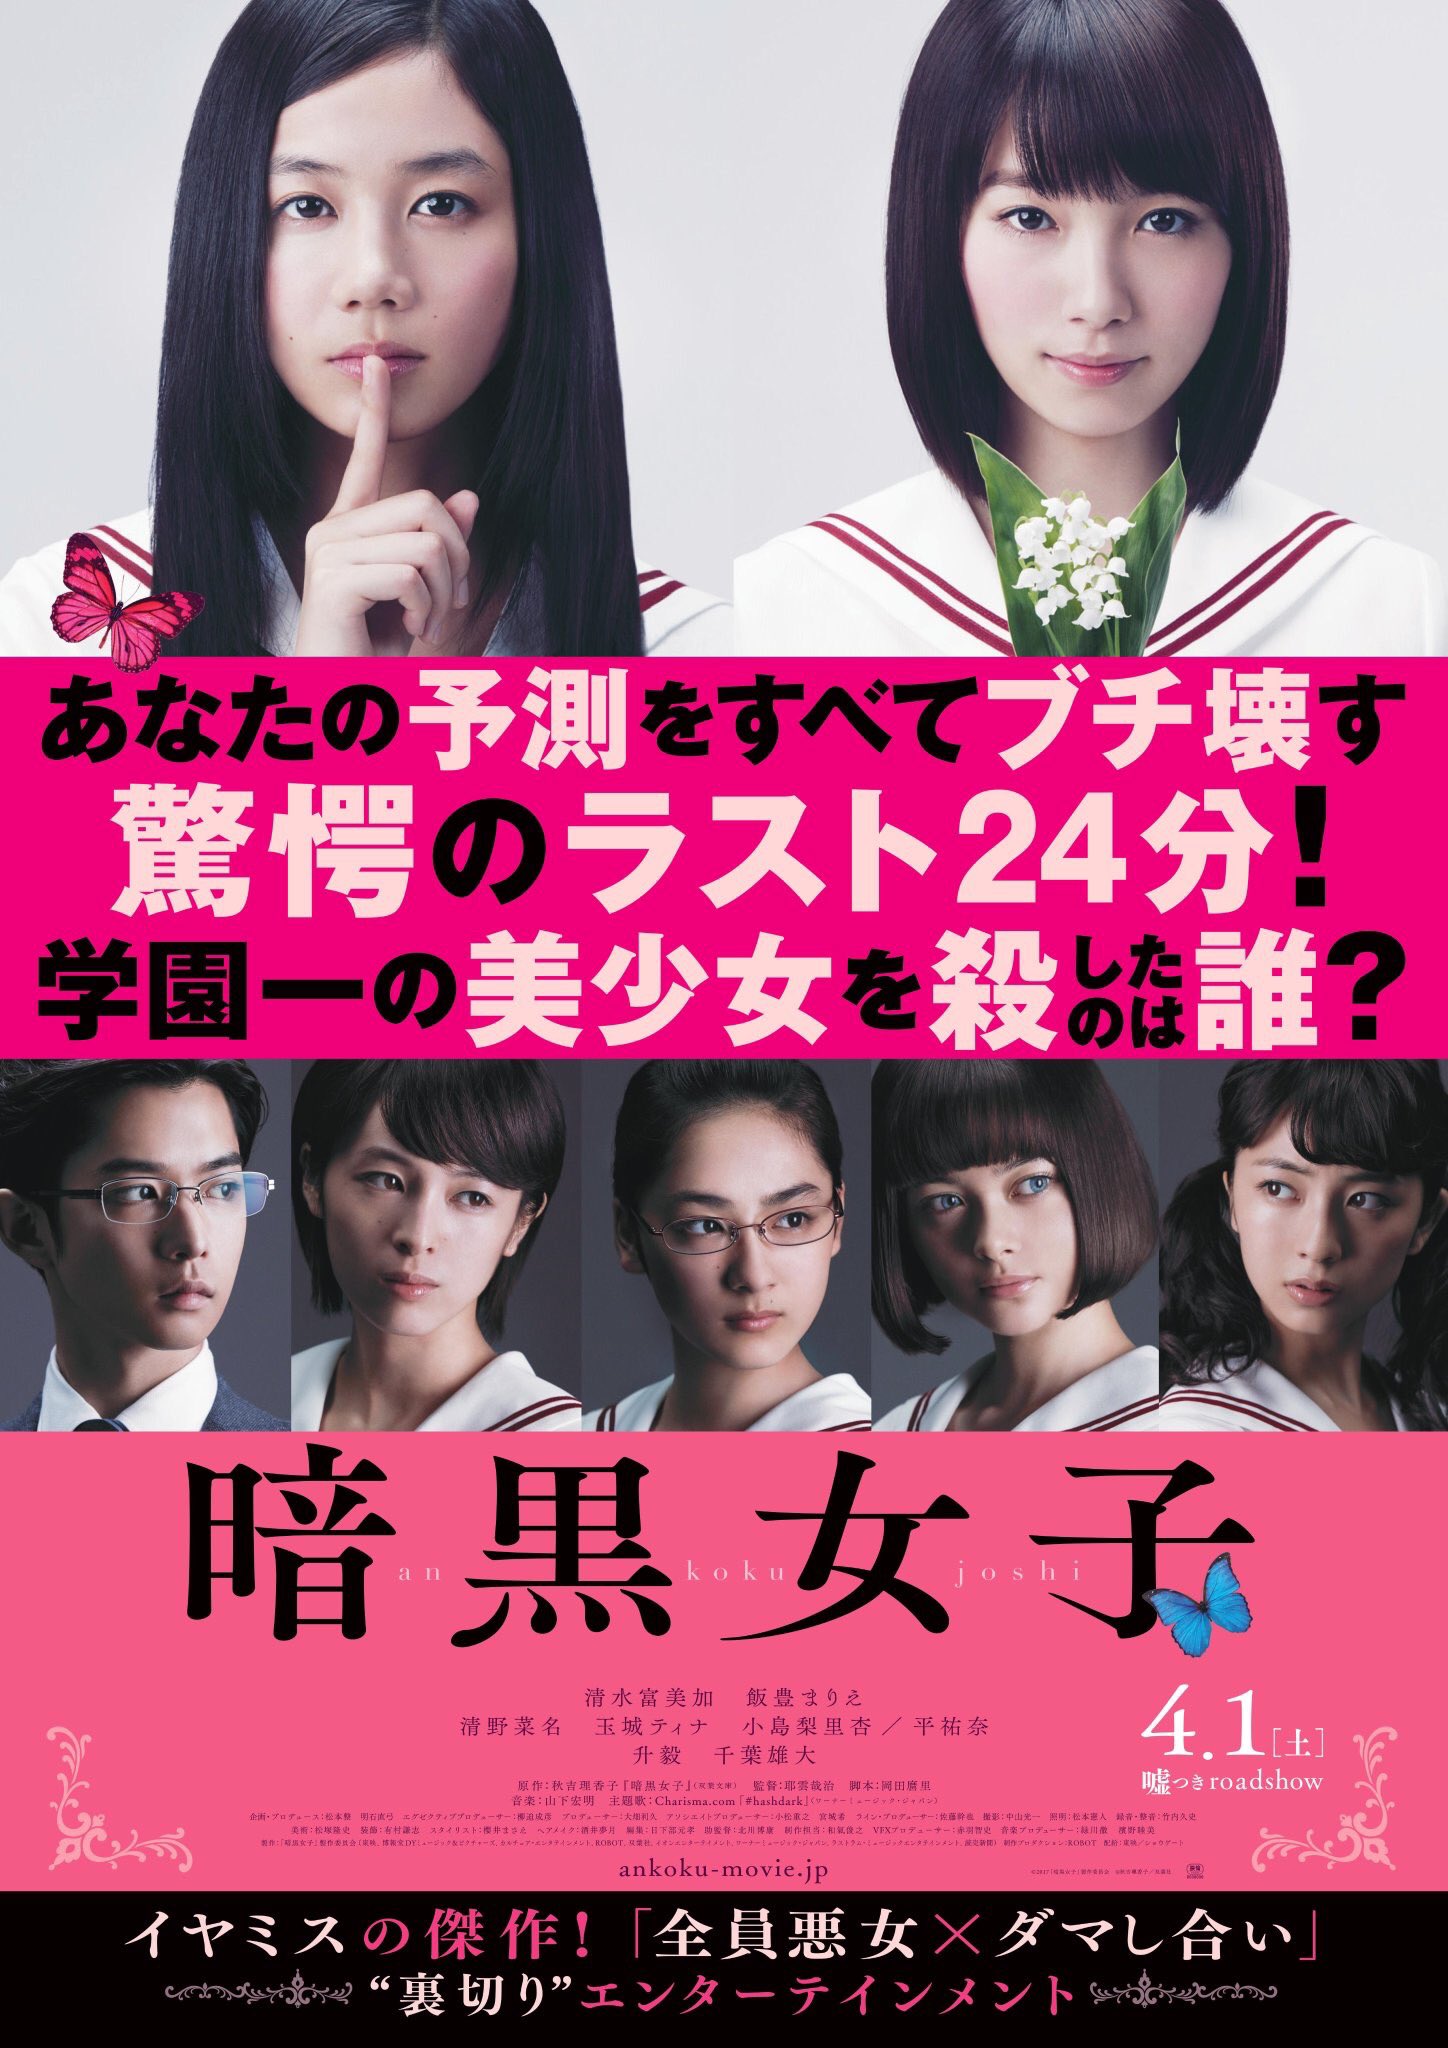 [Movie Preview] ANKOKU JOSHI – Câu chuyện chỉ những thiếu nữ ấy biết C1237GtUkAAqOIU